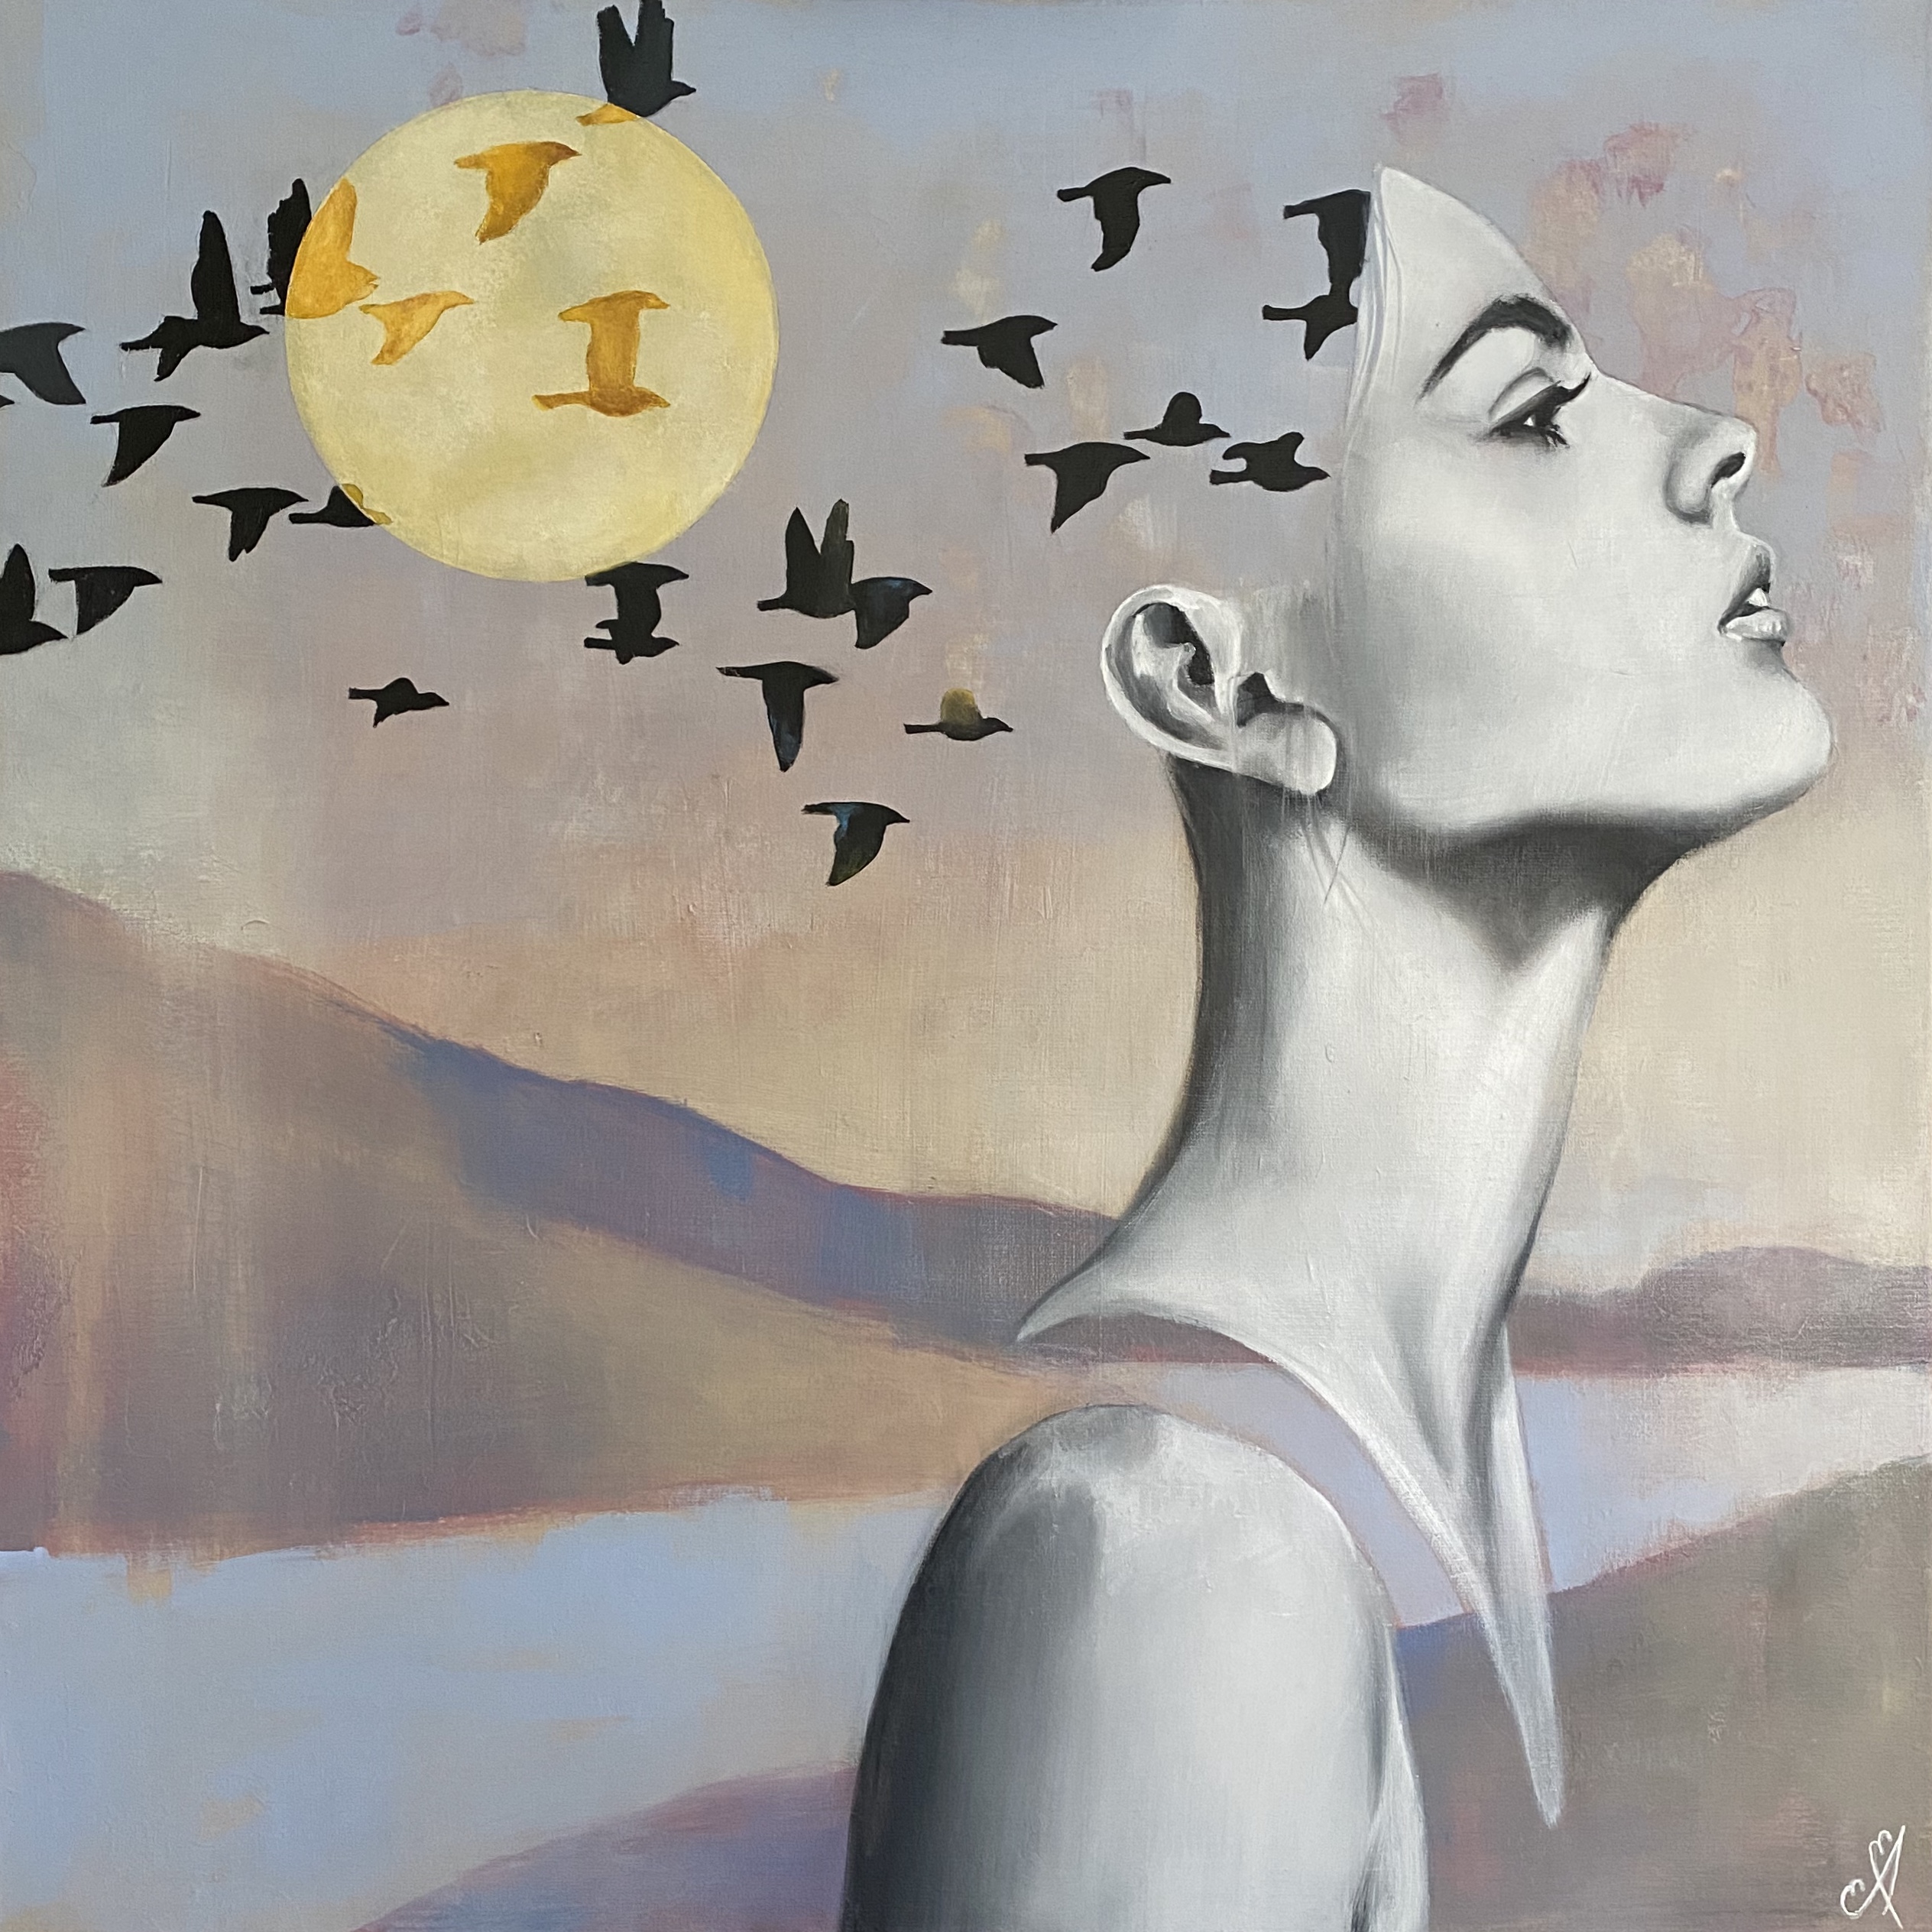 Kunst: Open sky, flock of thoughts van kunstenaar Angelique-Mathijssen-van-den Bosch